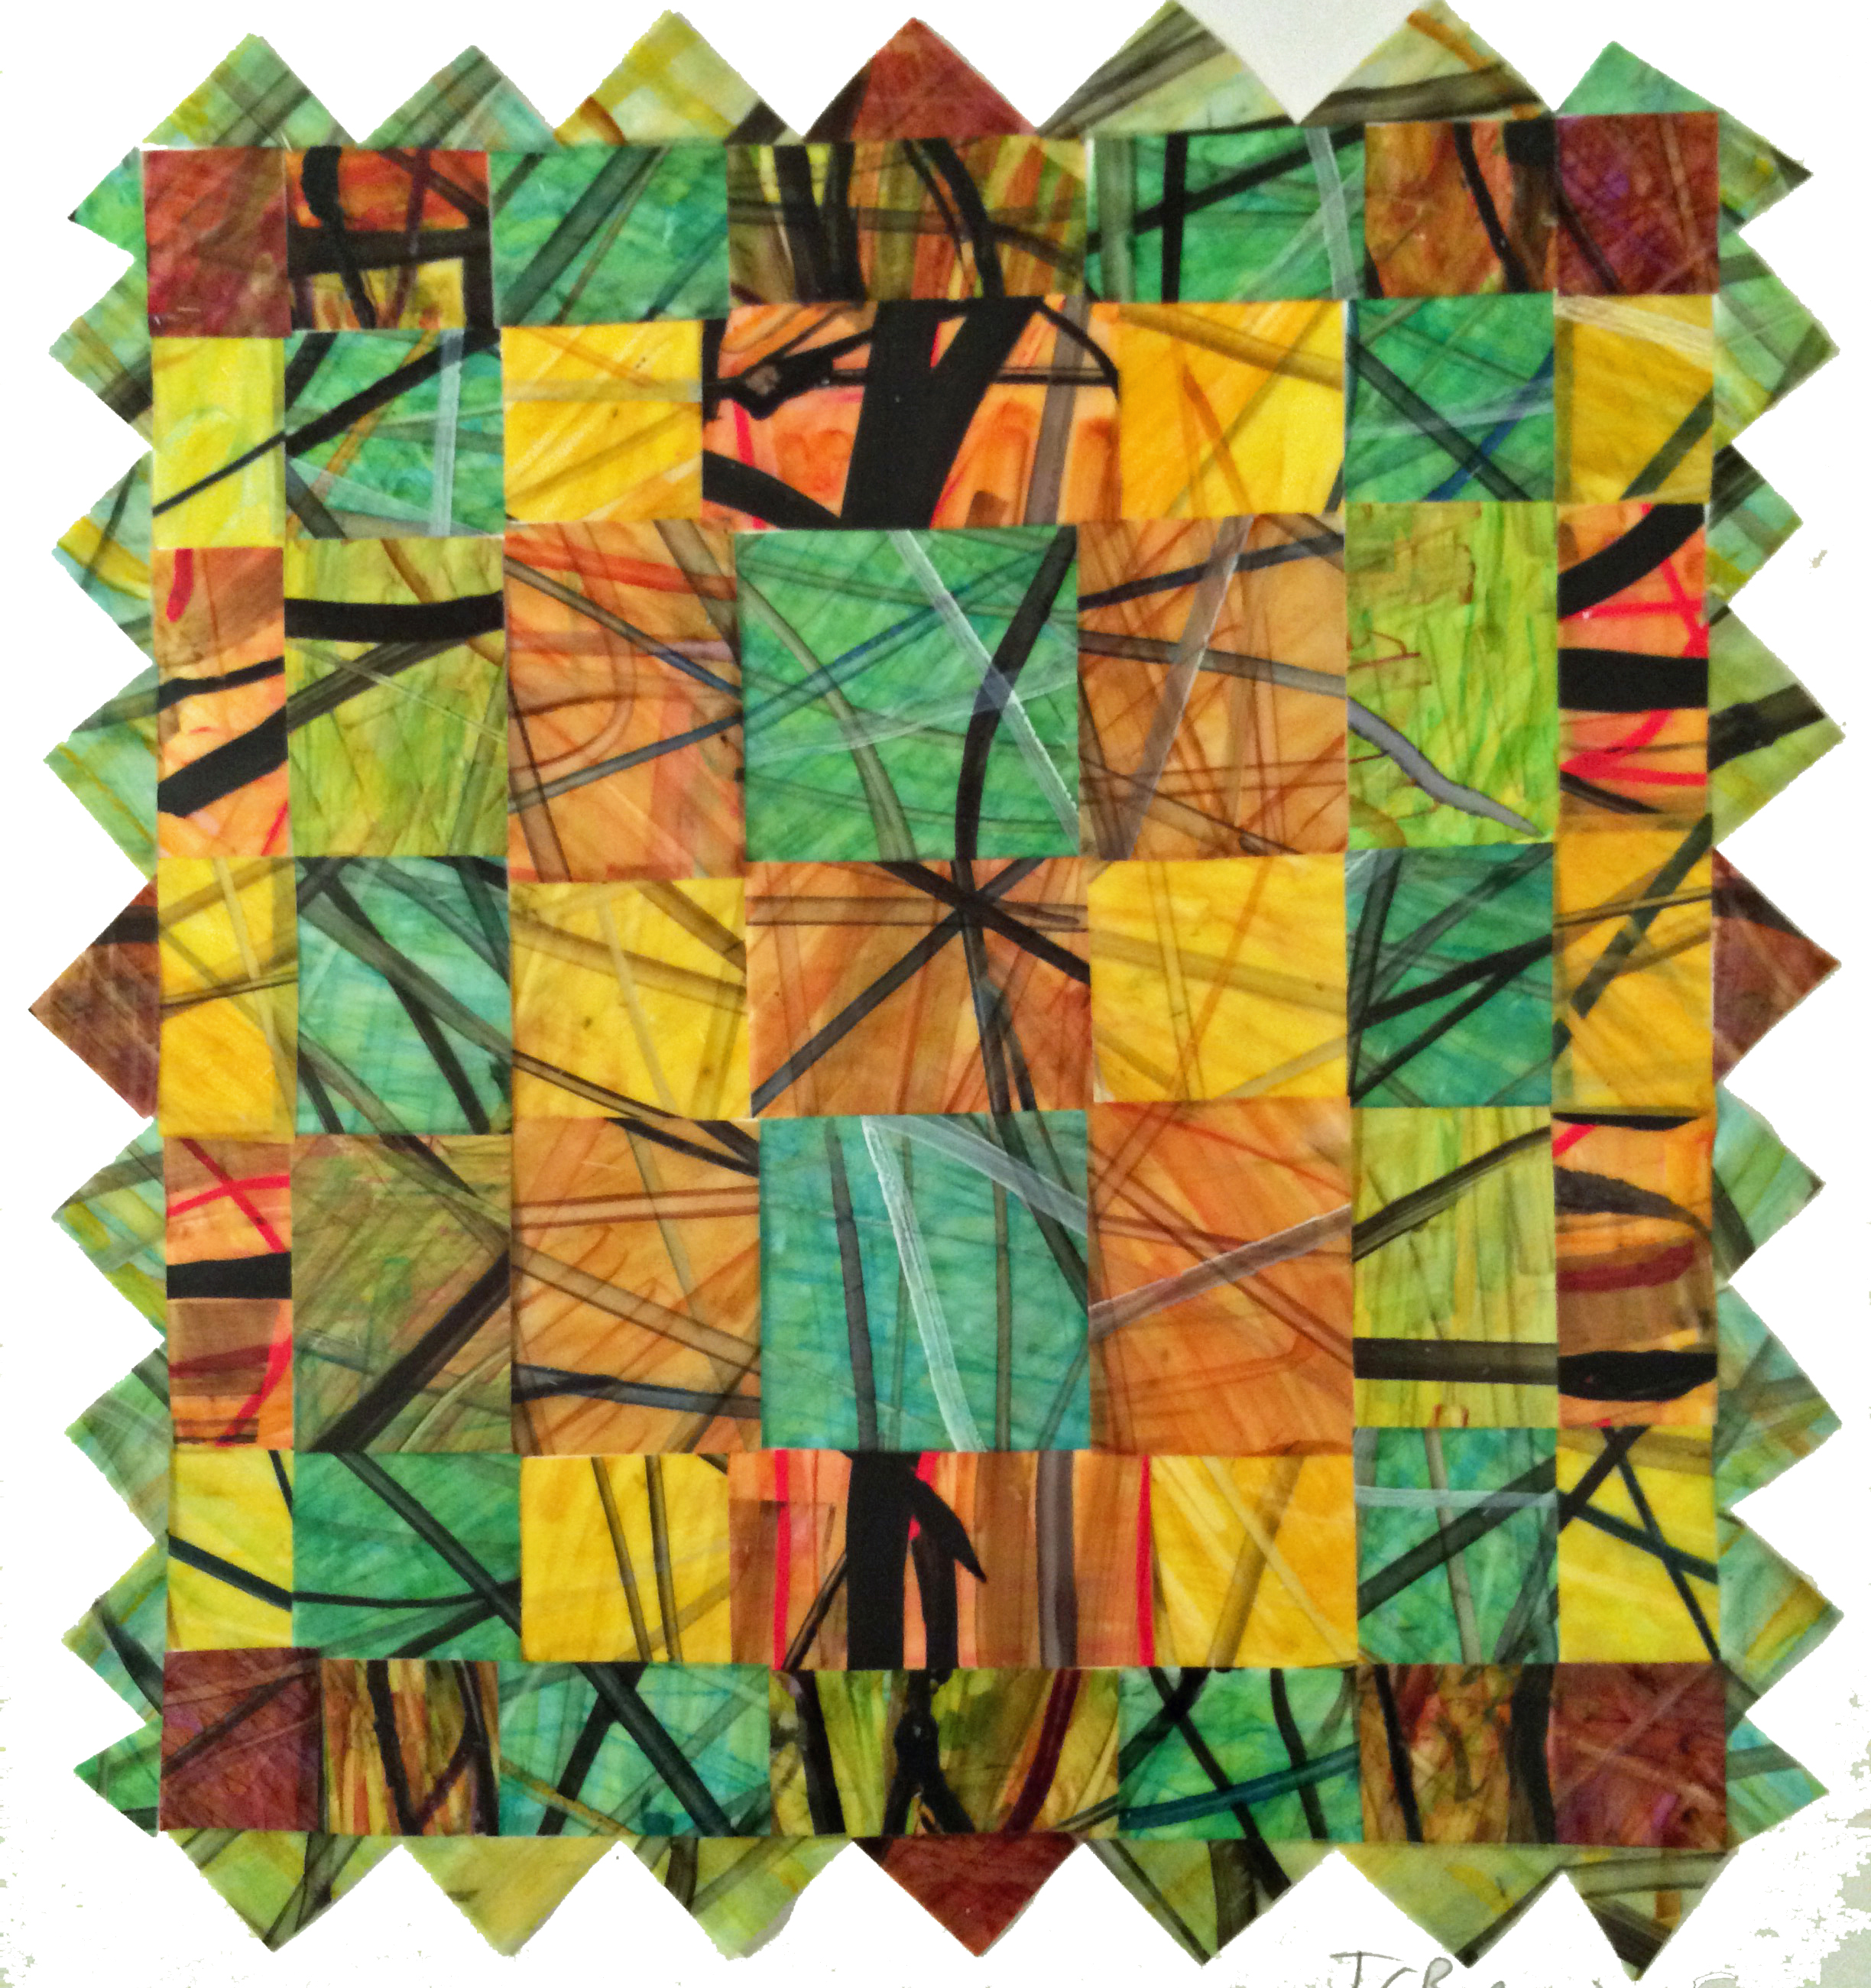 Scalloped Green Quilt, 2015, marker on vellum, $200 framed